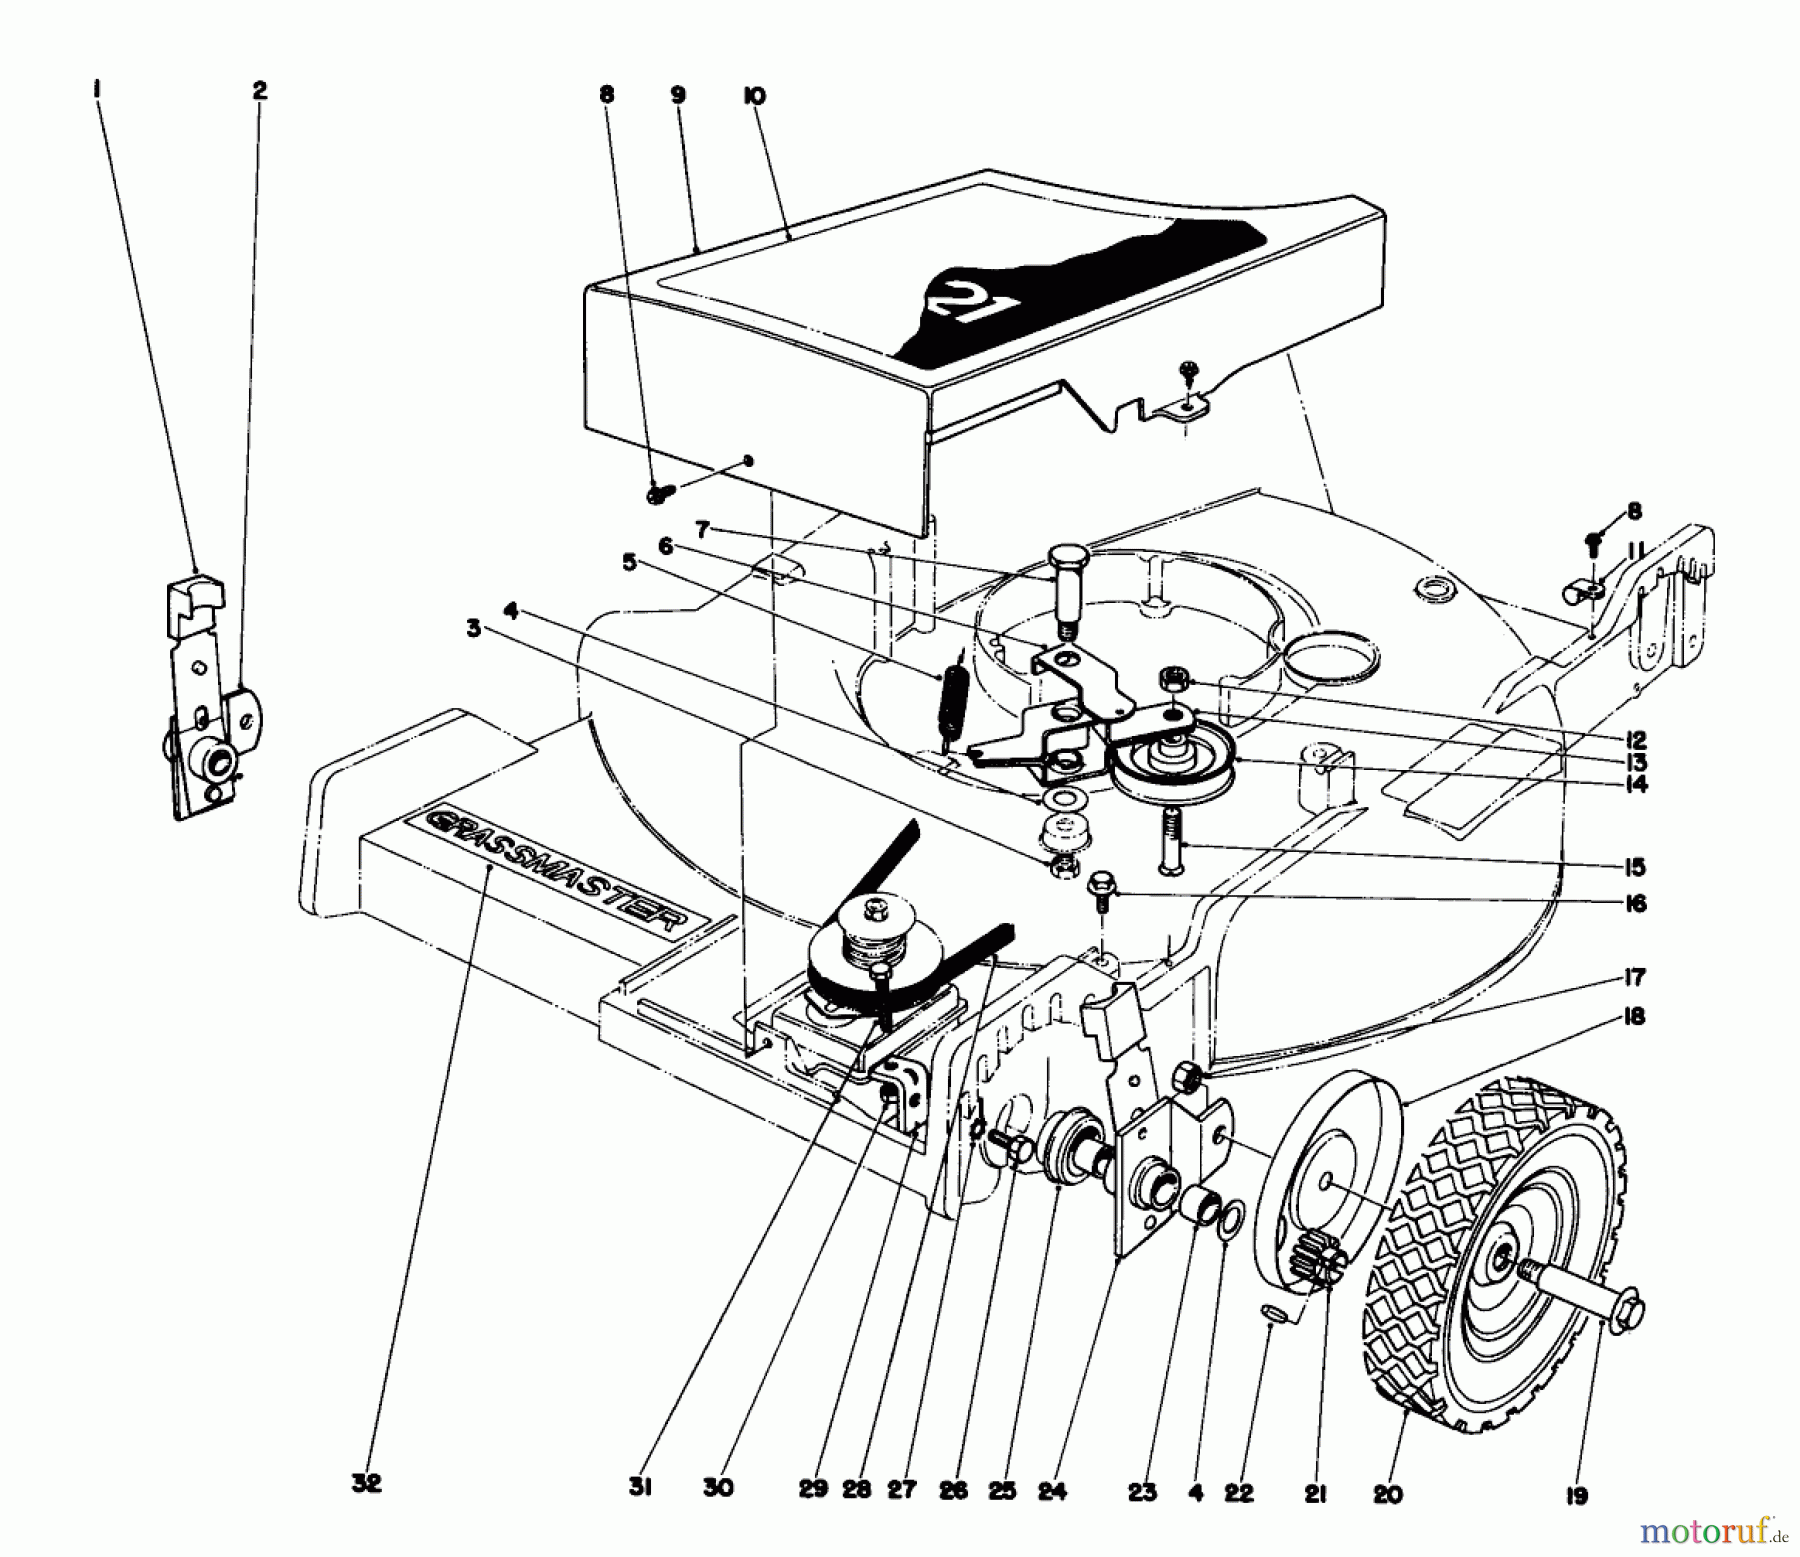  Toro Neu Mowers, Walk-Behind Seite 1 20660 - Toro Lawnmower, 1975 (5000001-5999999) FRONT WHEEL AND PIVOT ARM ASSEMBLY